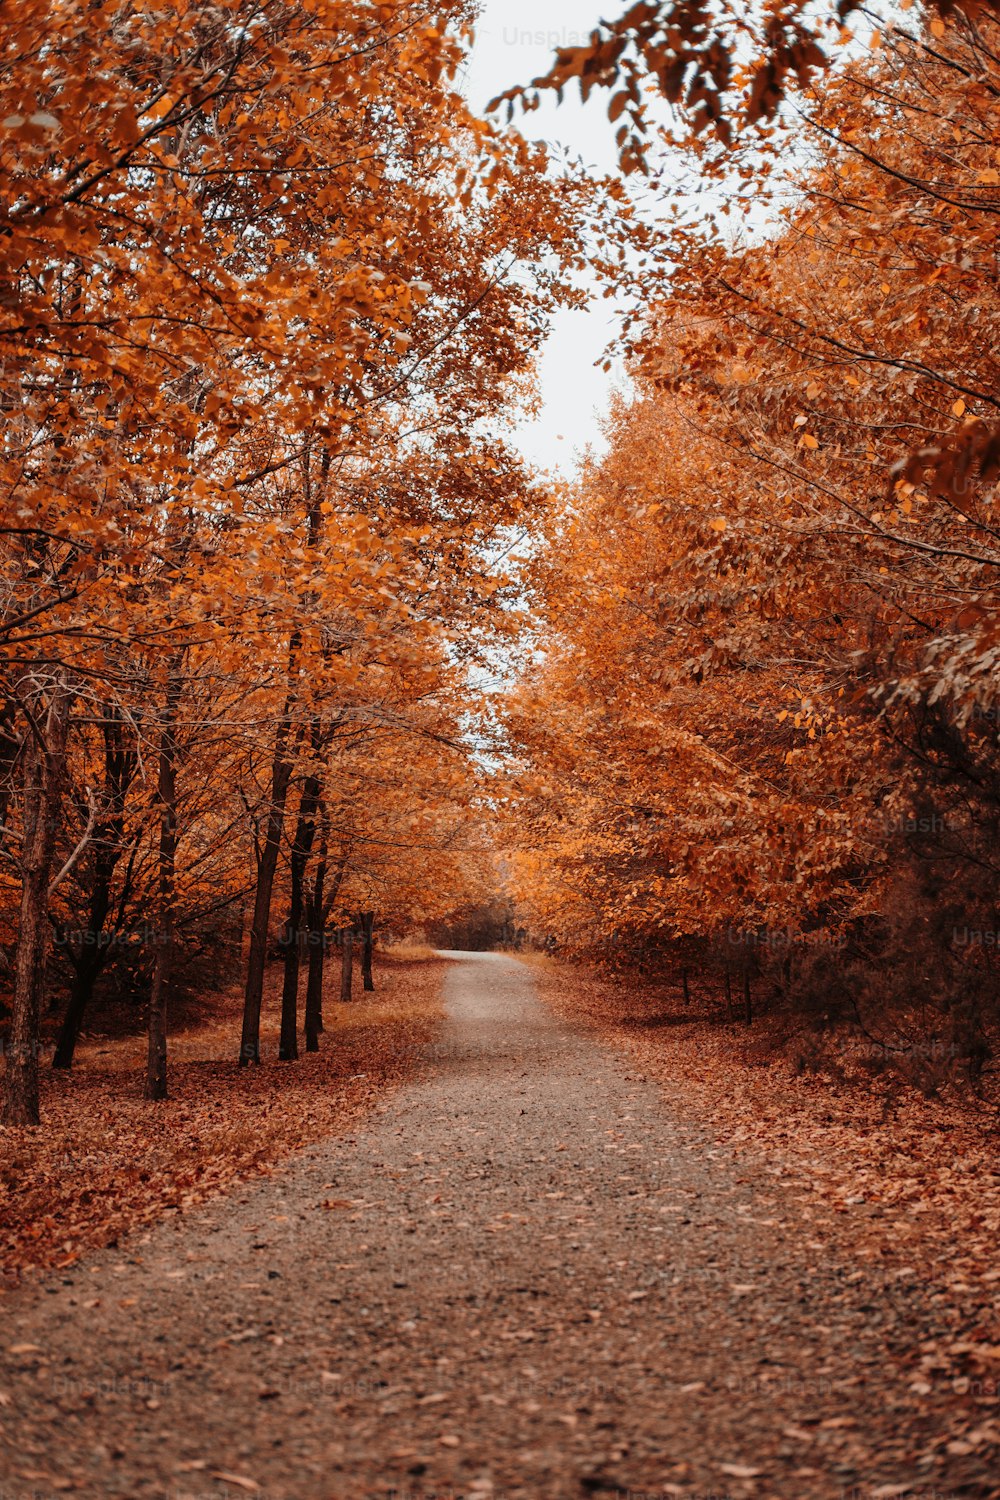 eine unbefestigte Straße, umgeben von Bäumen mit orangefarbenen Blättern